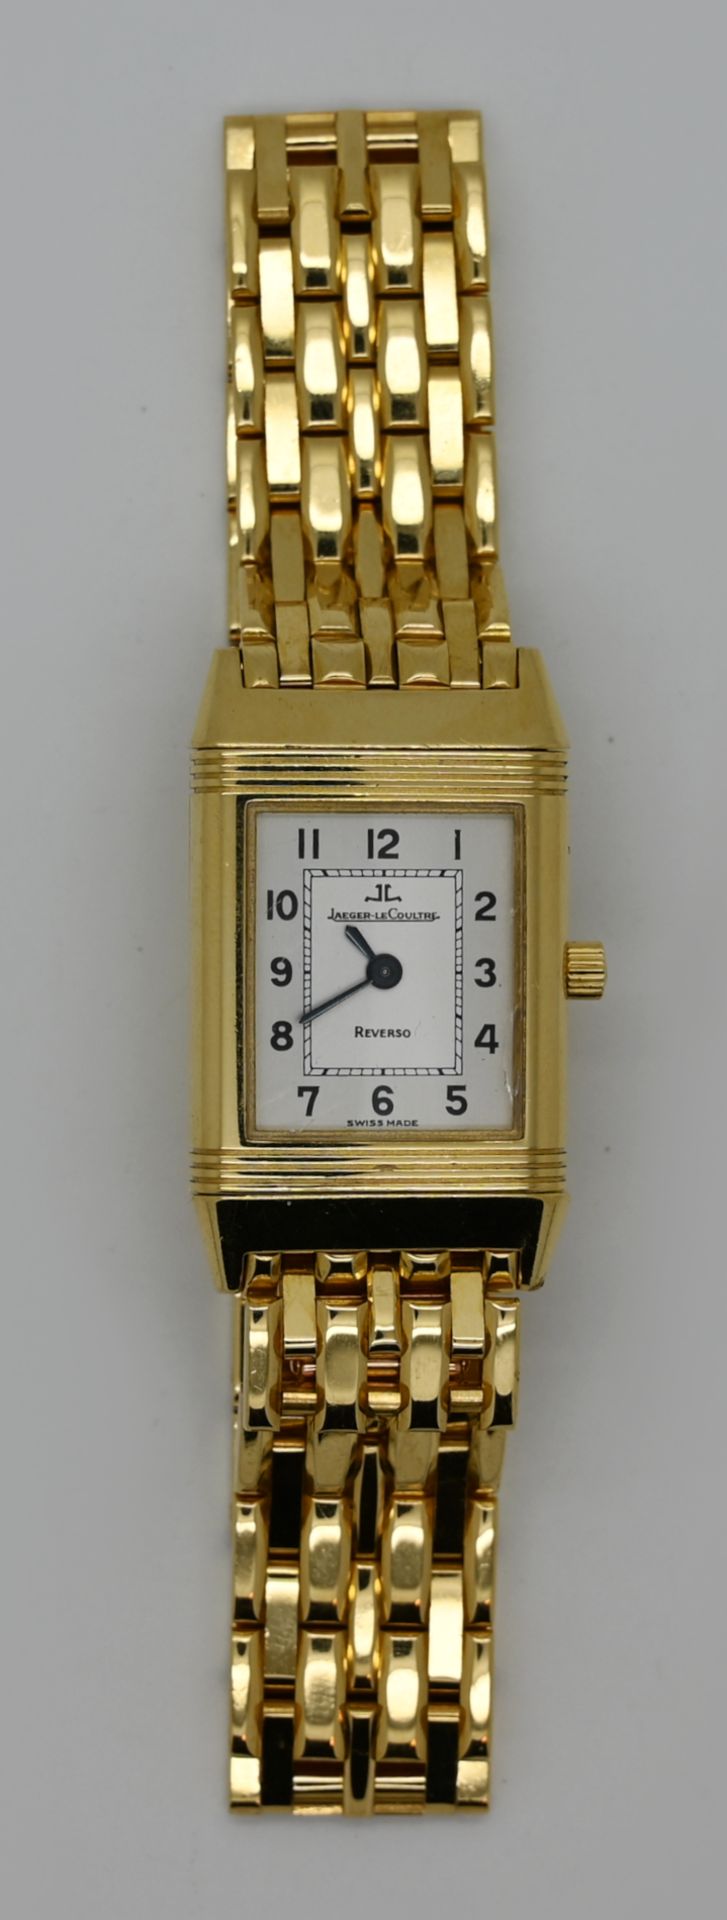 1 Damenarmbanduhr JAEGER LECOULTRE Reverso GG 18ct., mit Faltschließe, Handaufzug (Uhr läuft an), - Image 2 of 3